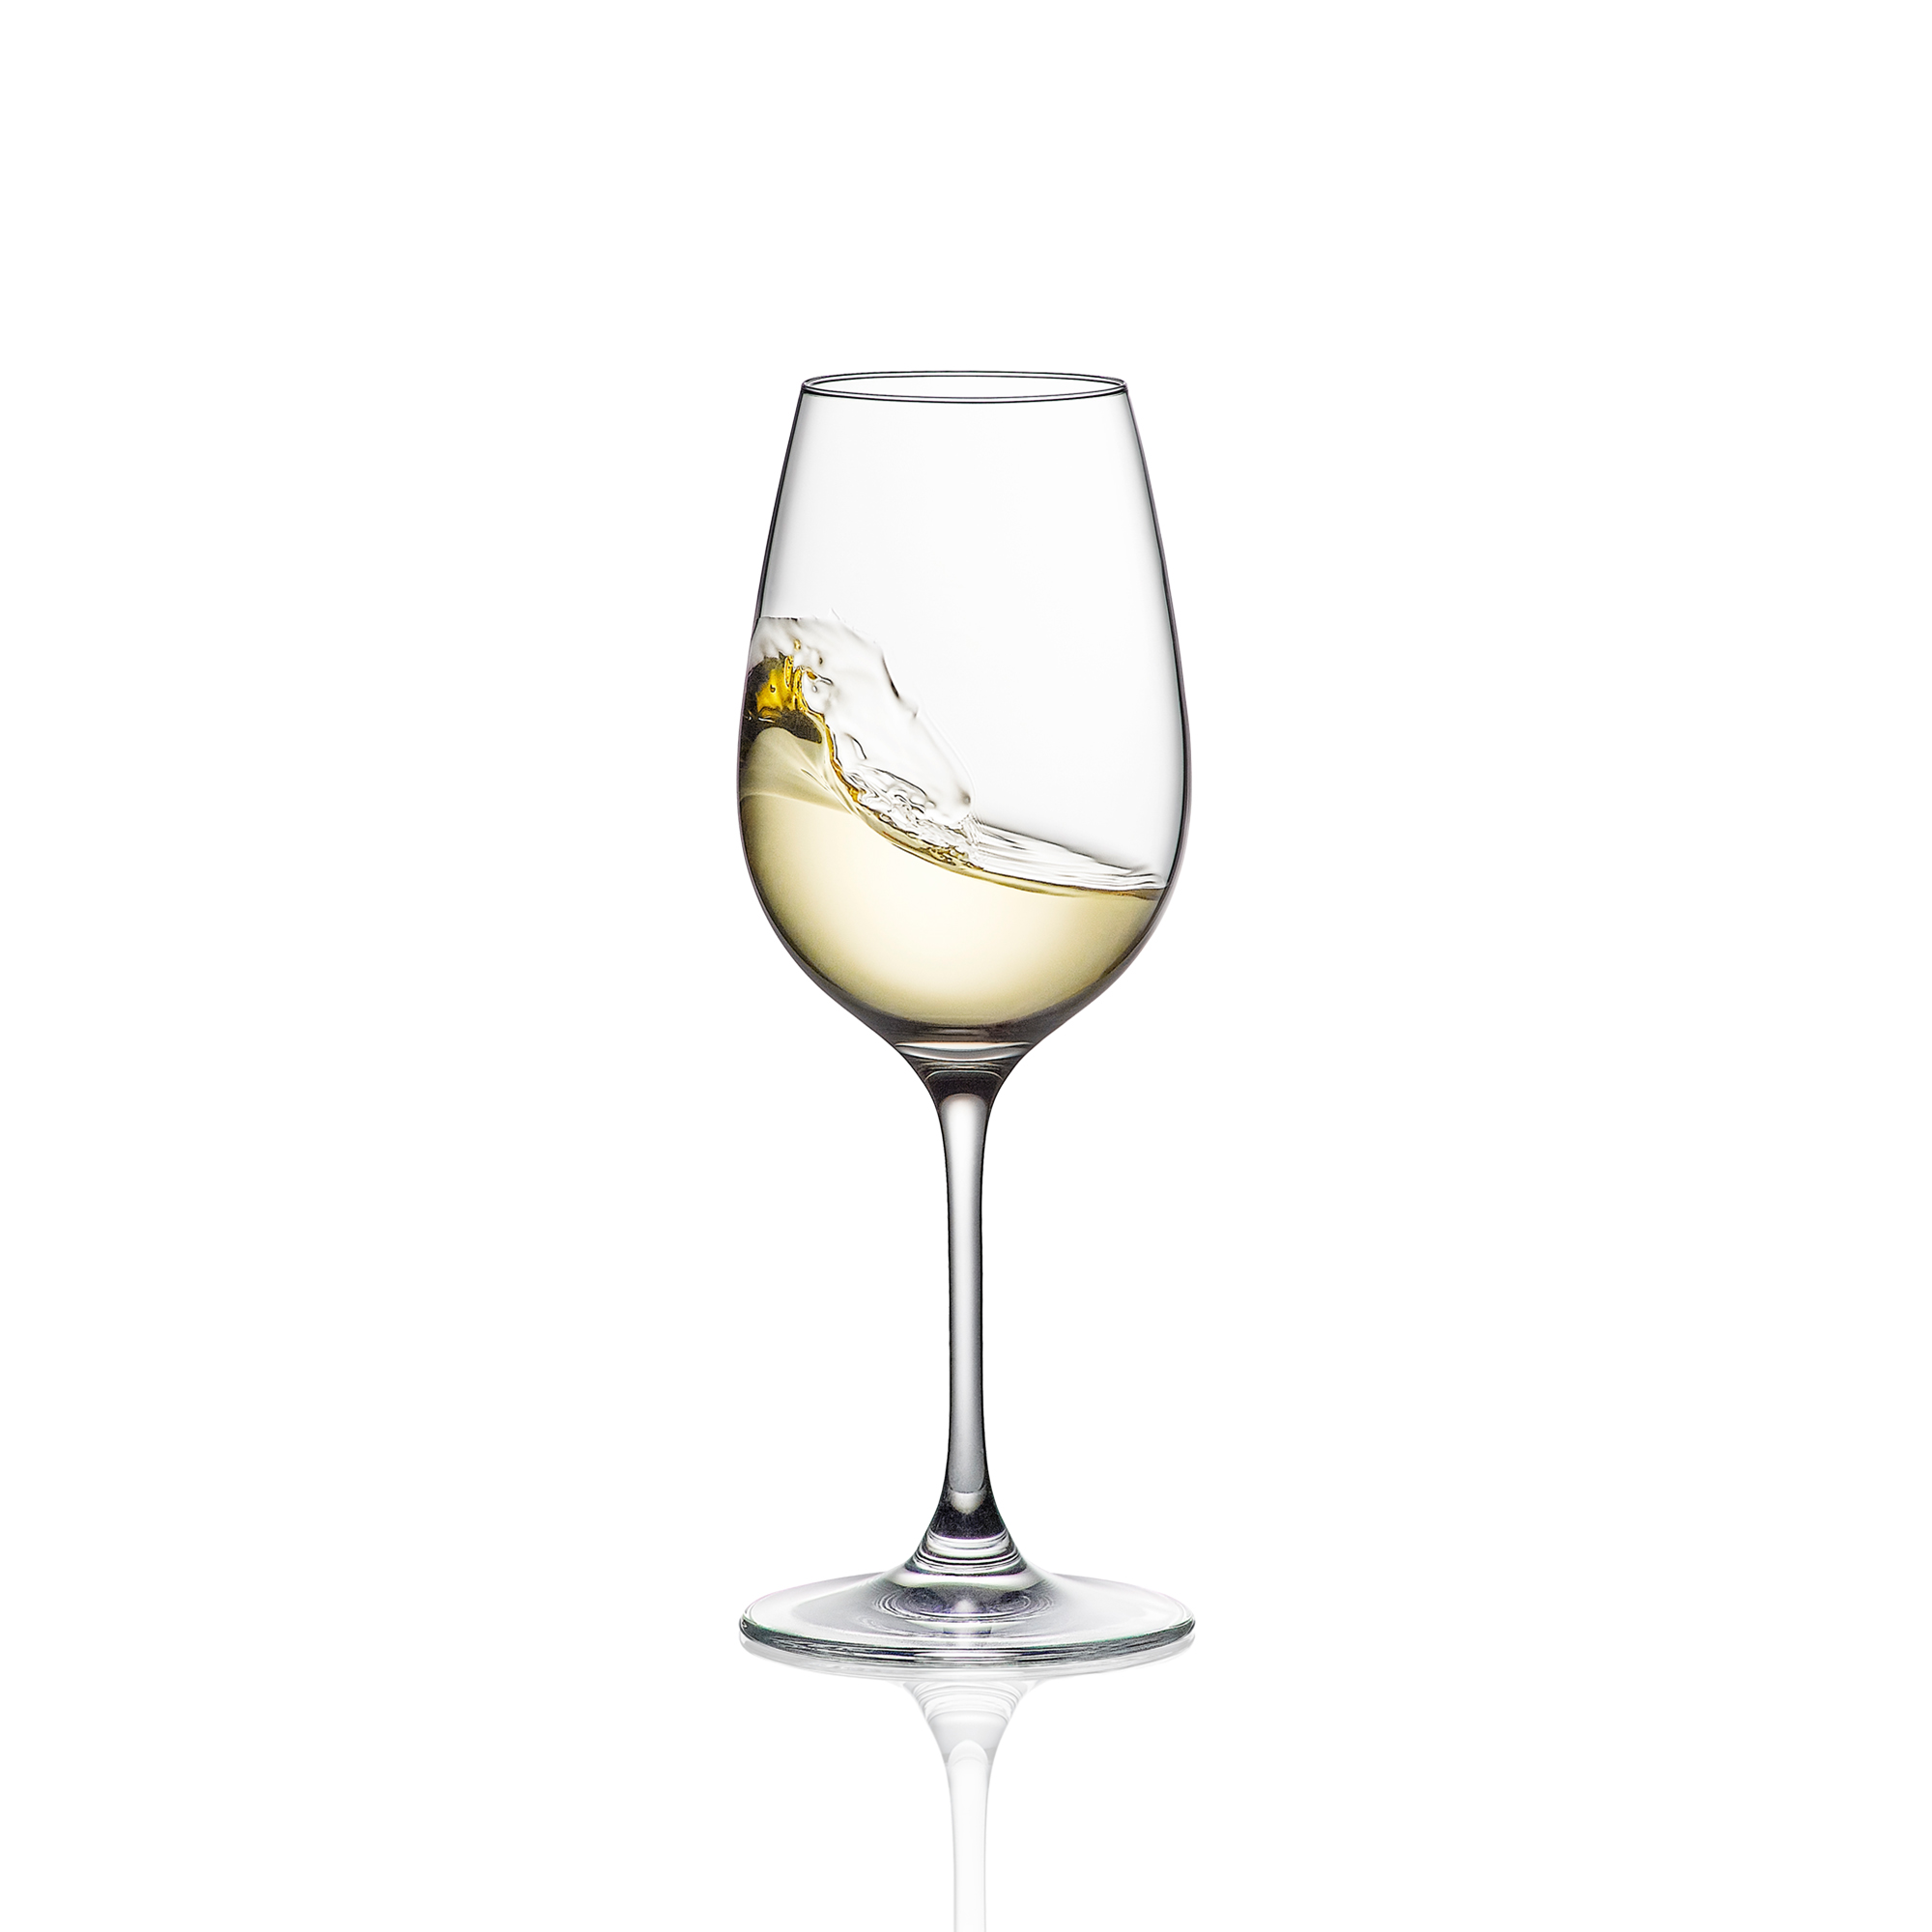 filosofi blandt bruger RONA Prestige 45 Wine Glass - RONA USA